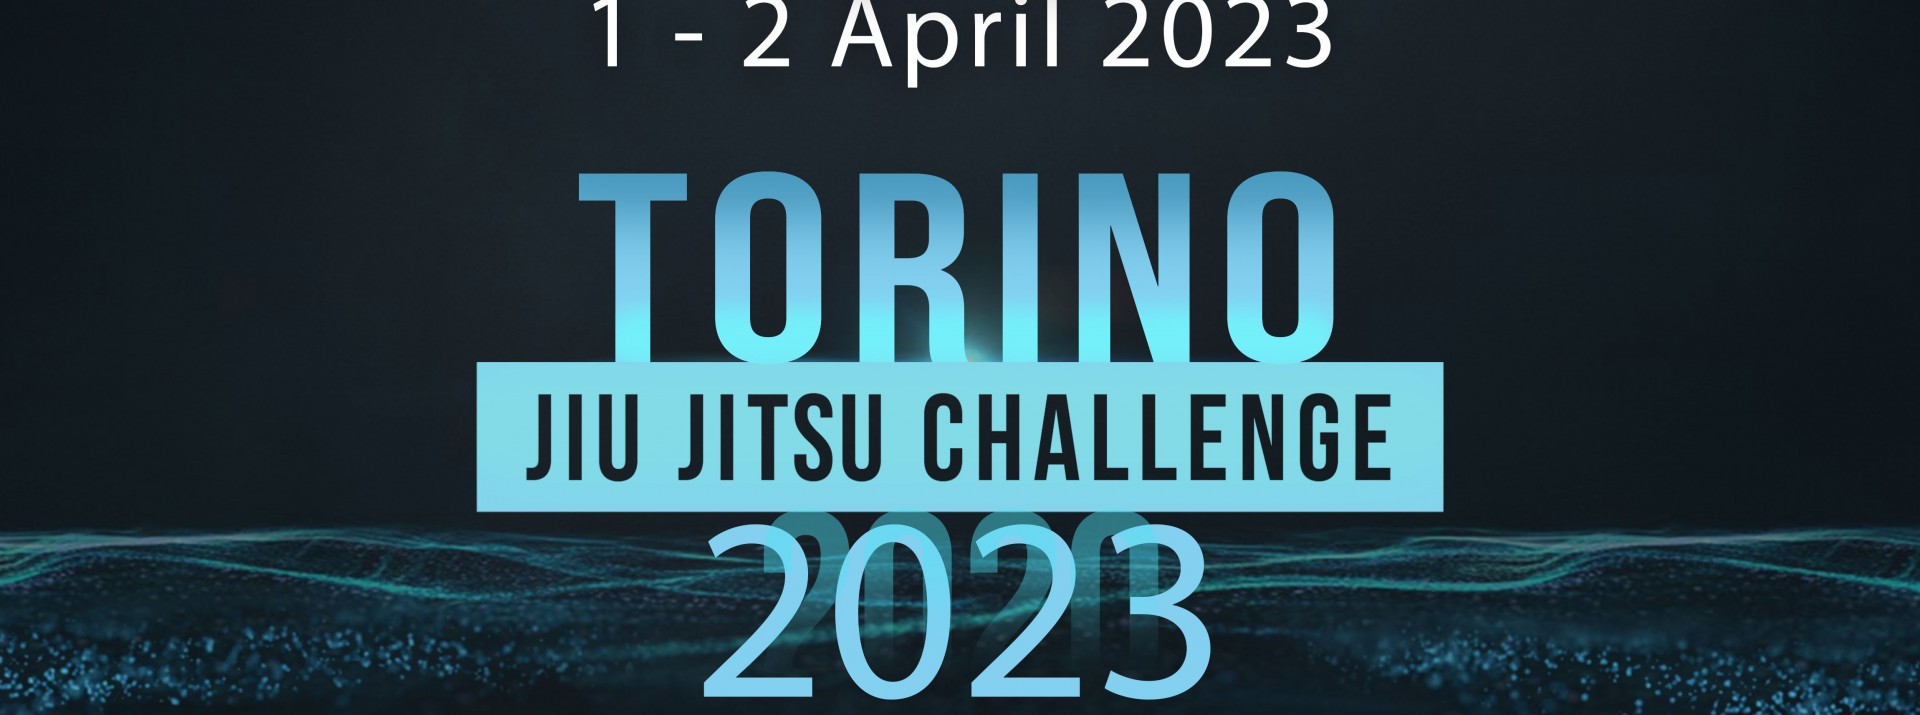 CAMPIONATO ITALIANO UIJJ 2022 - JIU JITSU EXPO DAY TWO